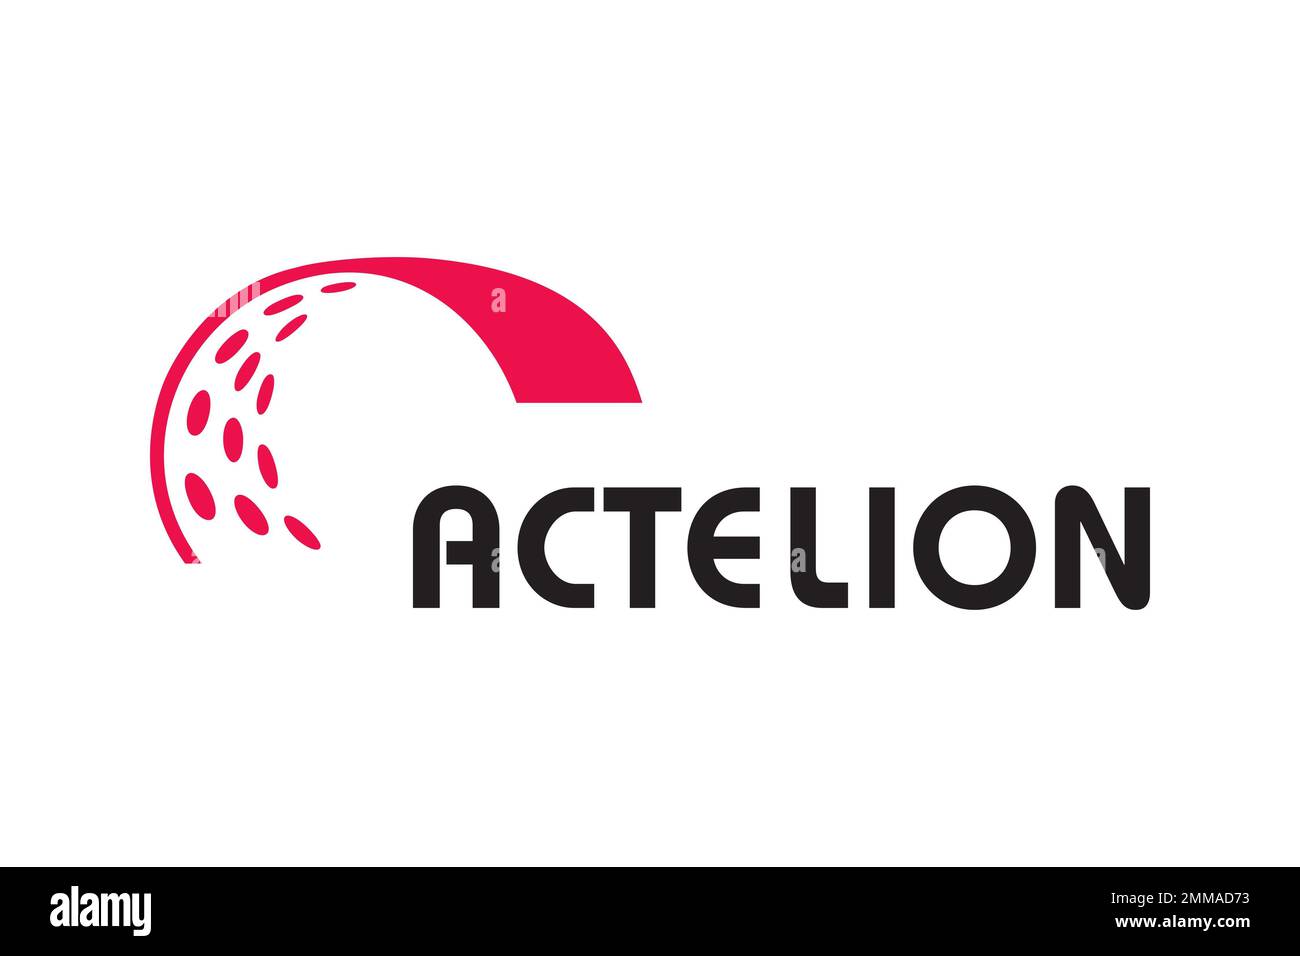 Actelion, white background, logo, brand name Stock Photo